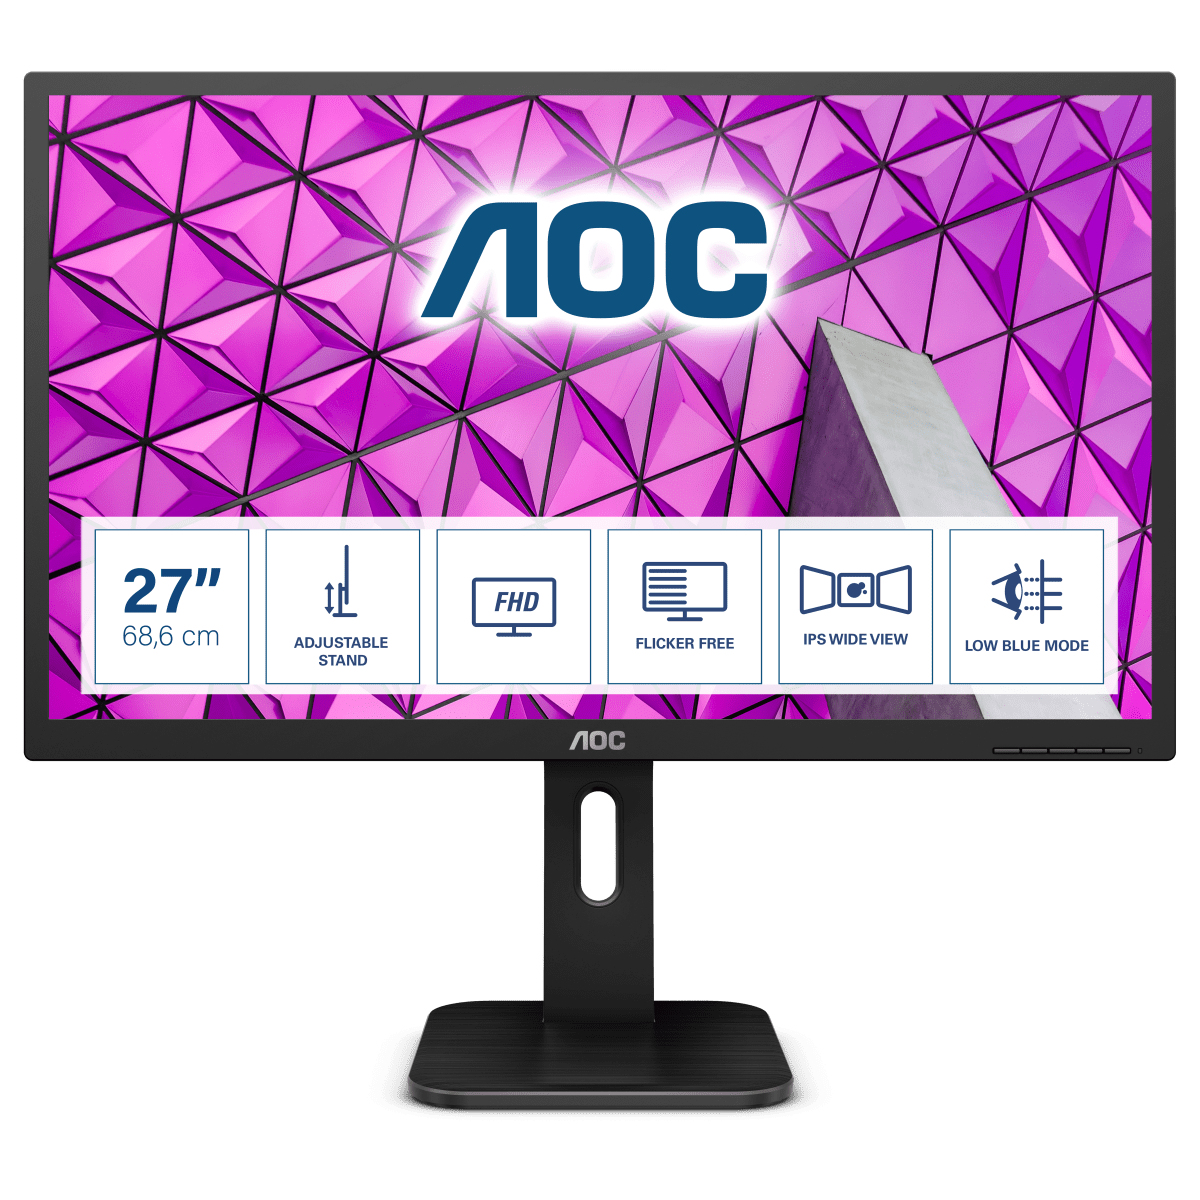 Image of AOC P1 27P1 monitor piatto per PC 68,6 cm (27) 1920 x 1080 Pixel Full HD LED Nero